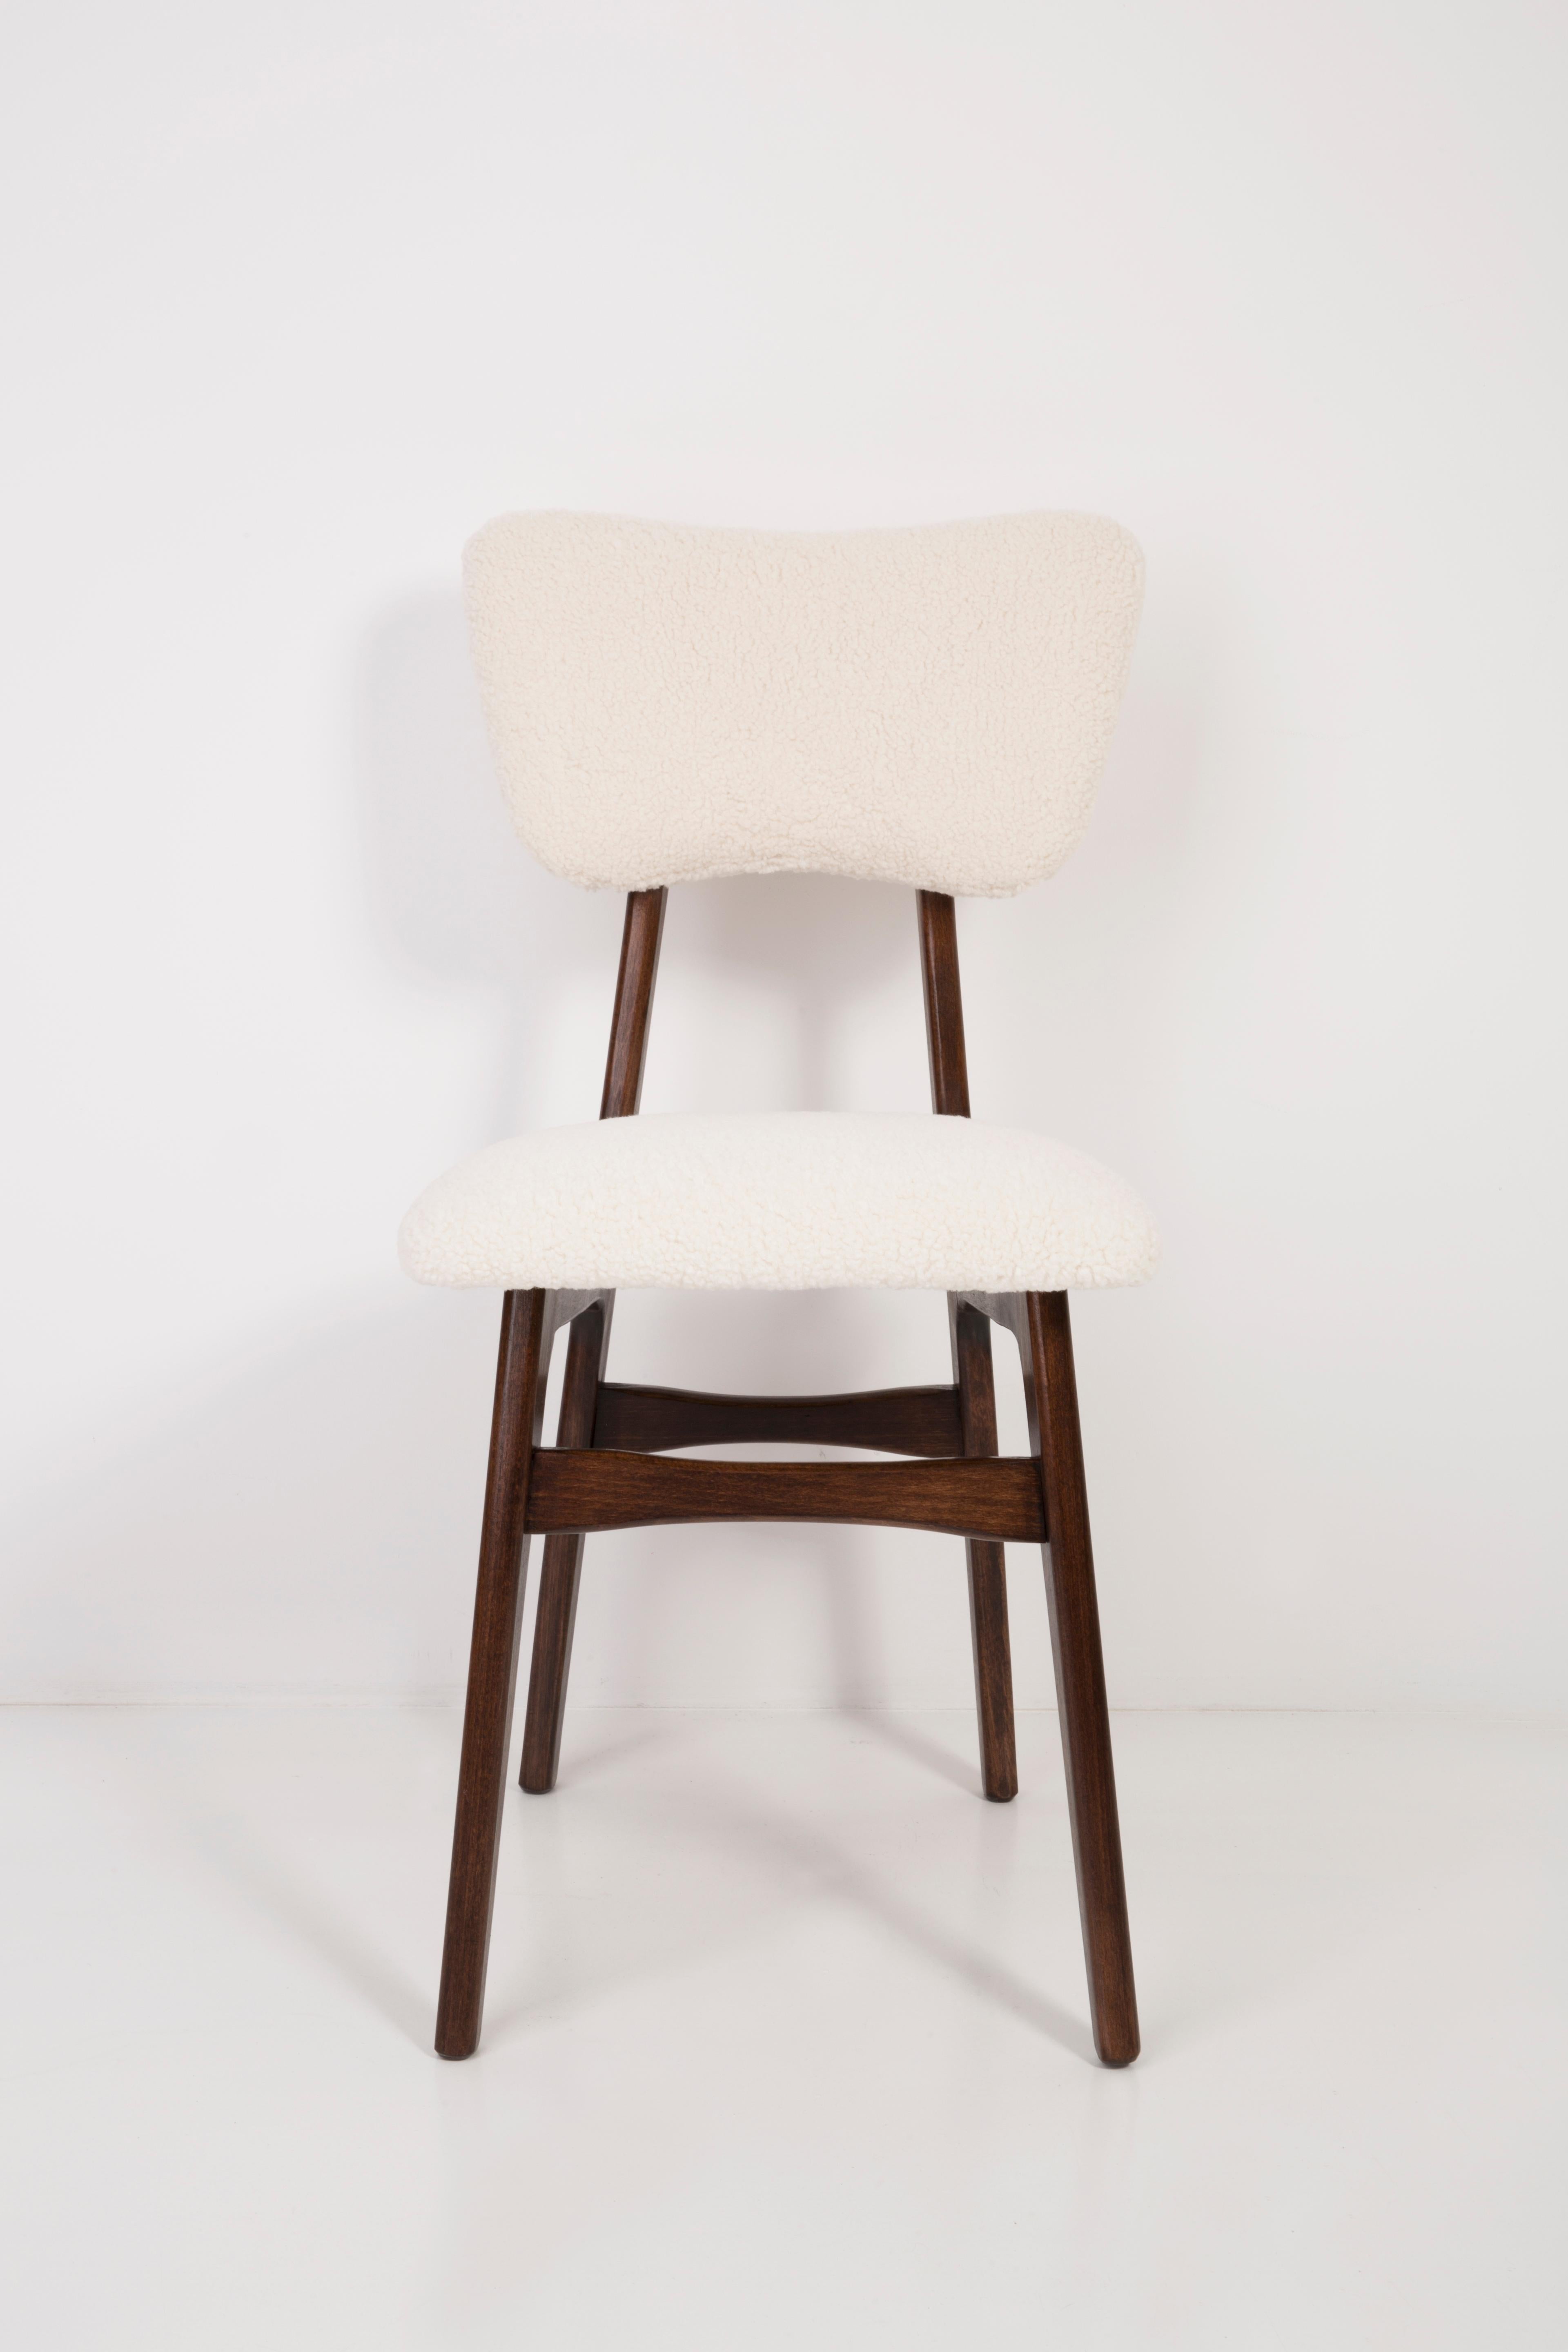 Chaises conçues par le professeur Rajmund Halas. Fabriqué en bois de hêtre. Le fauteuil a subi une rénovation complète de la tapisserie et les boiseries ont été rafraîchies. L'assise et le dossier sont habillés d'un tissu bouclé crème, durable et